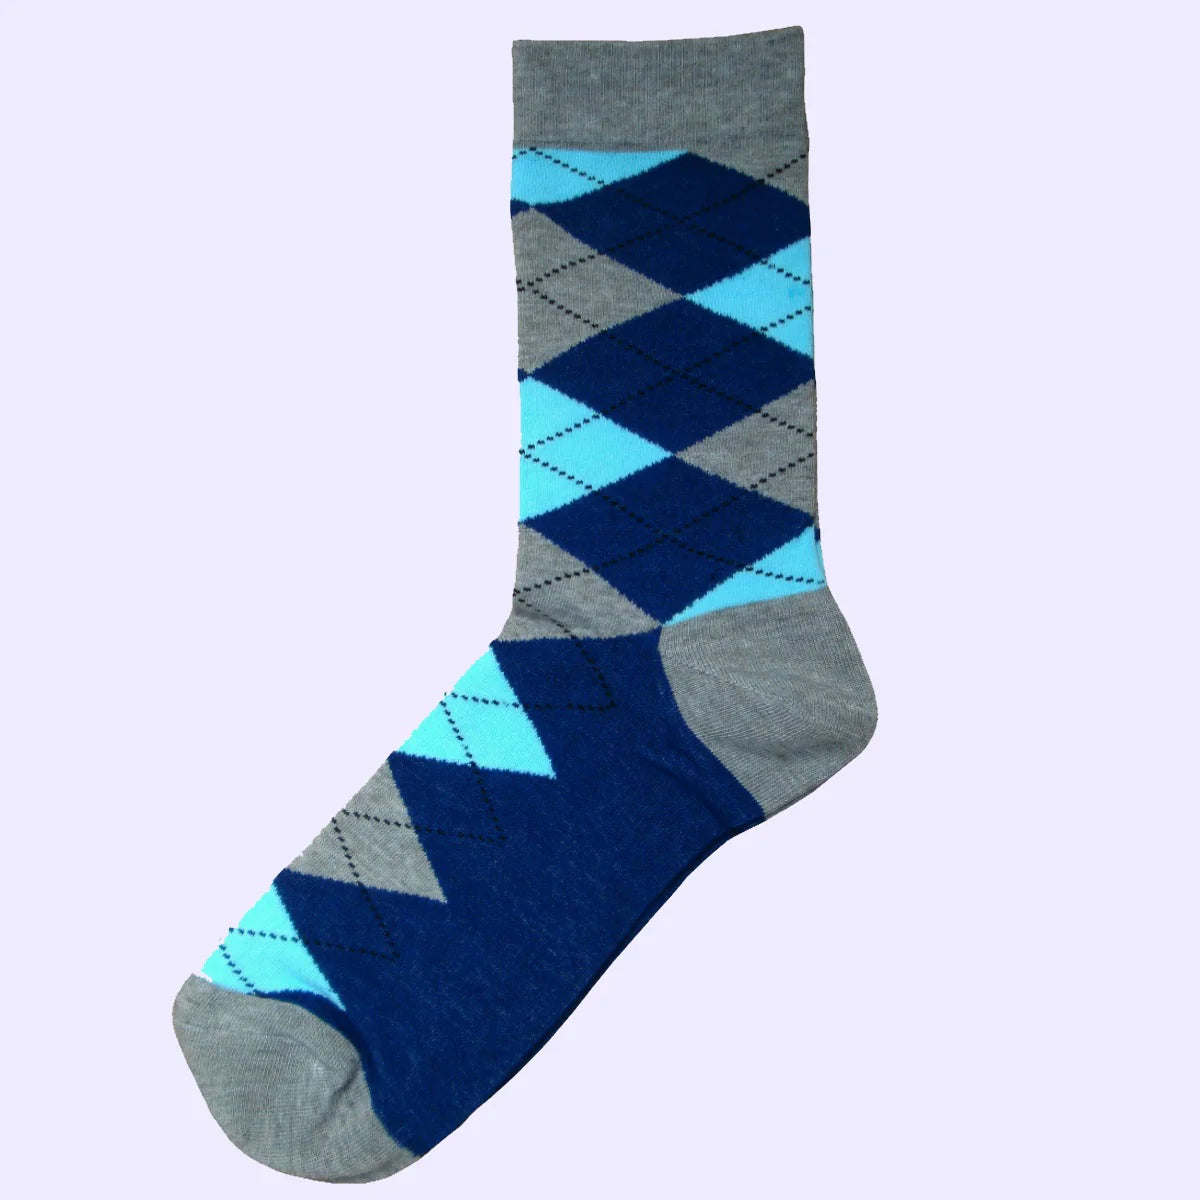 Men's Argyle Socks Grey/Navy/Light Blue